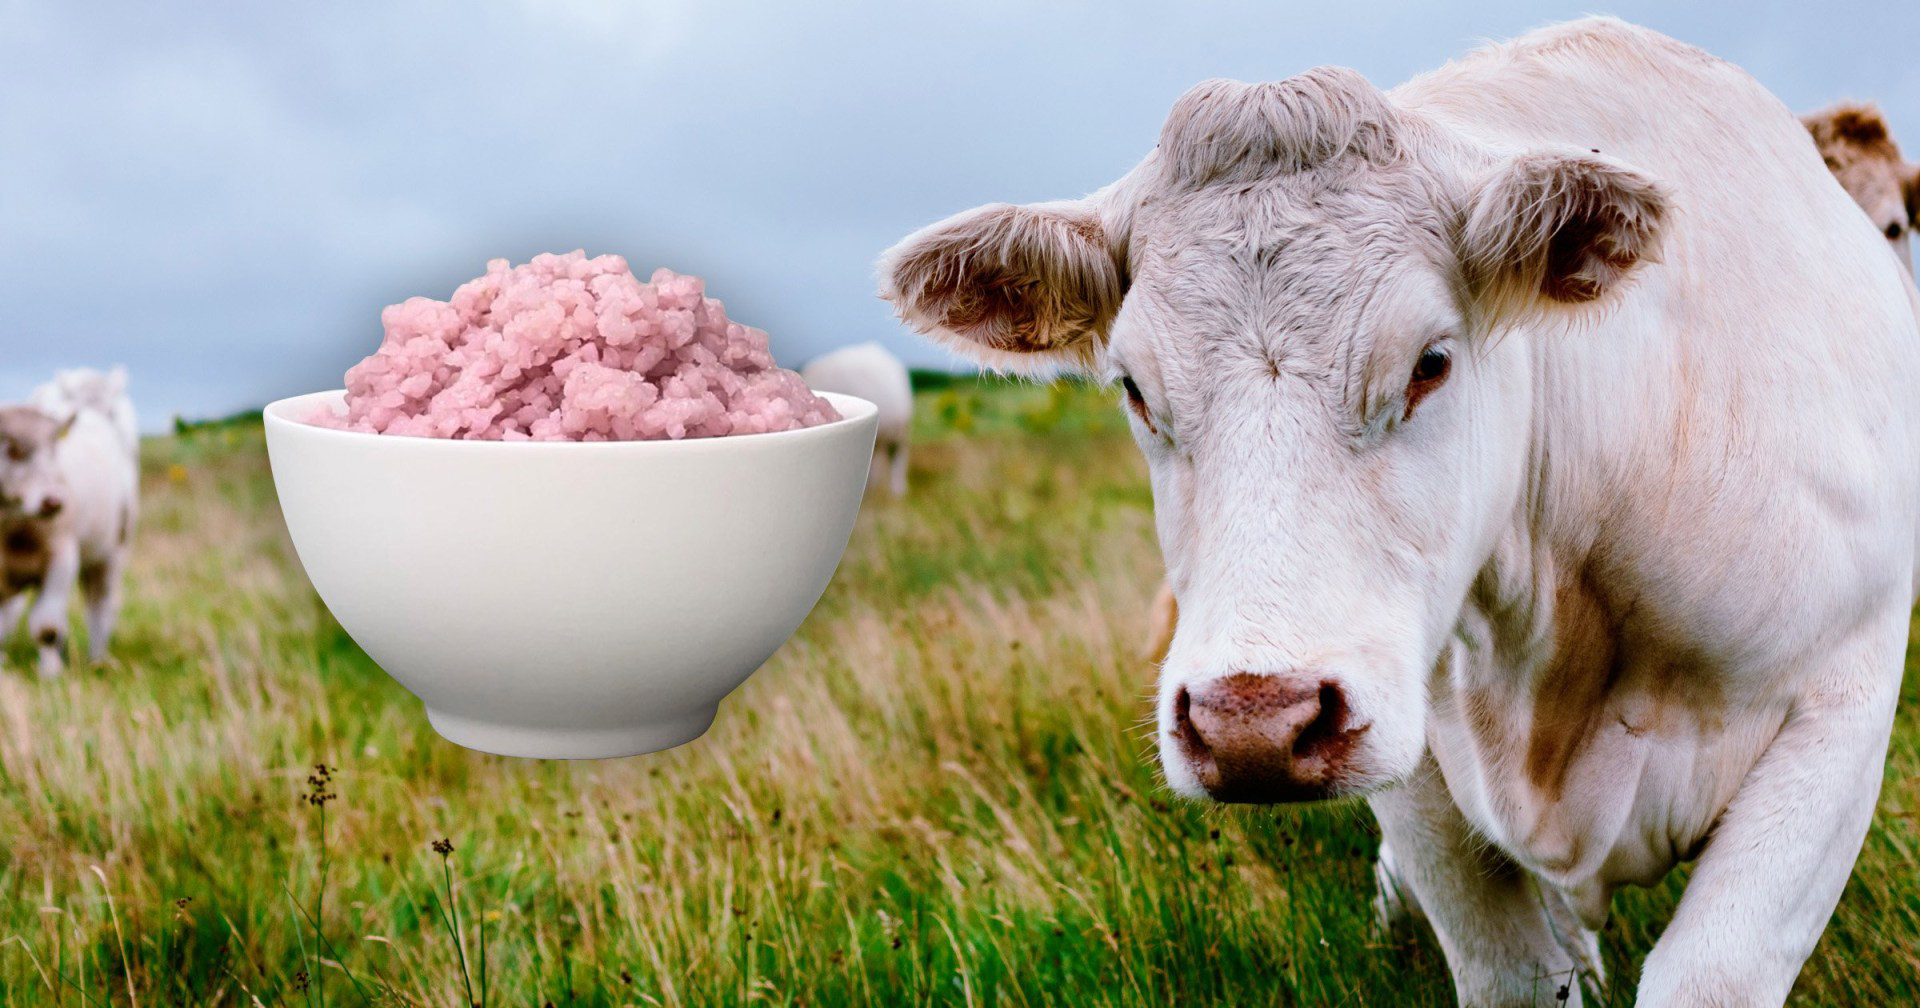 Hybrid food just got weirder - now rice can grow beef inside itself